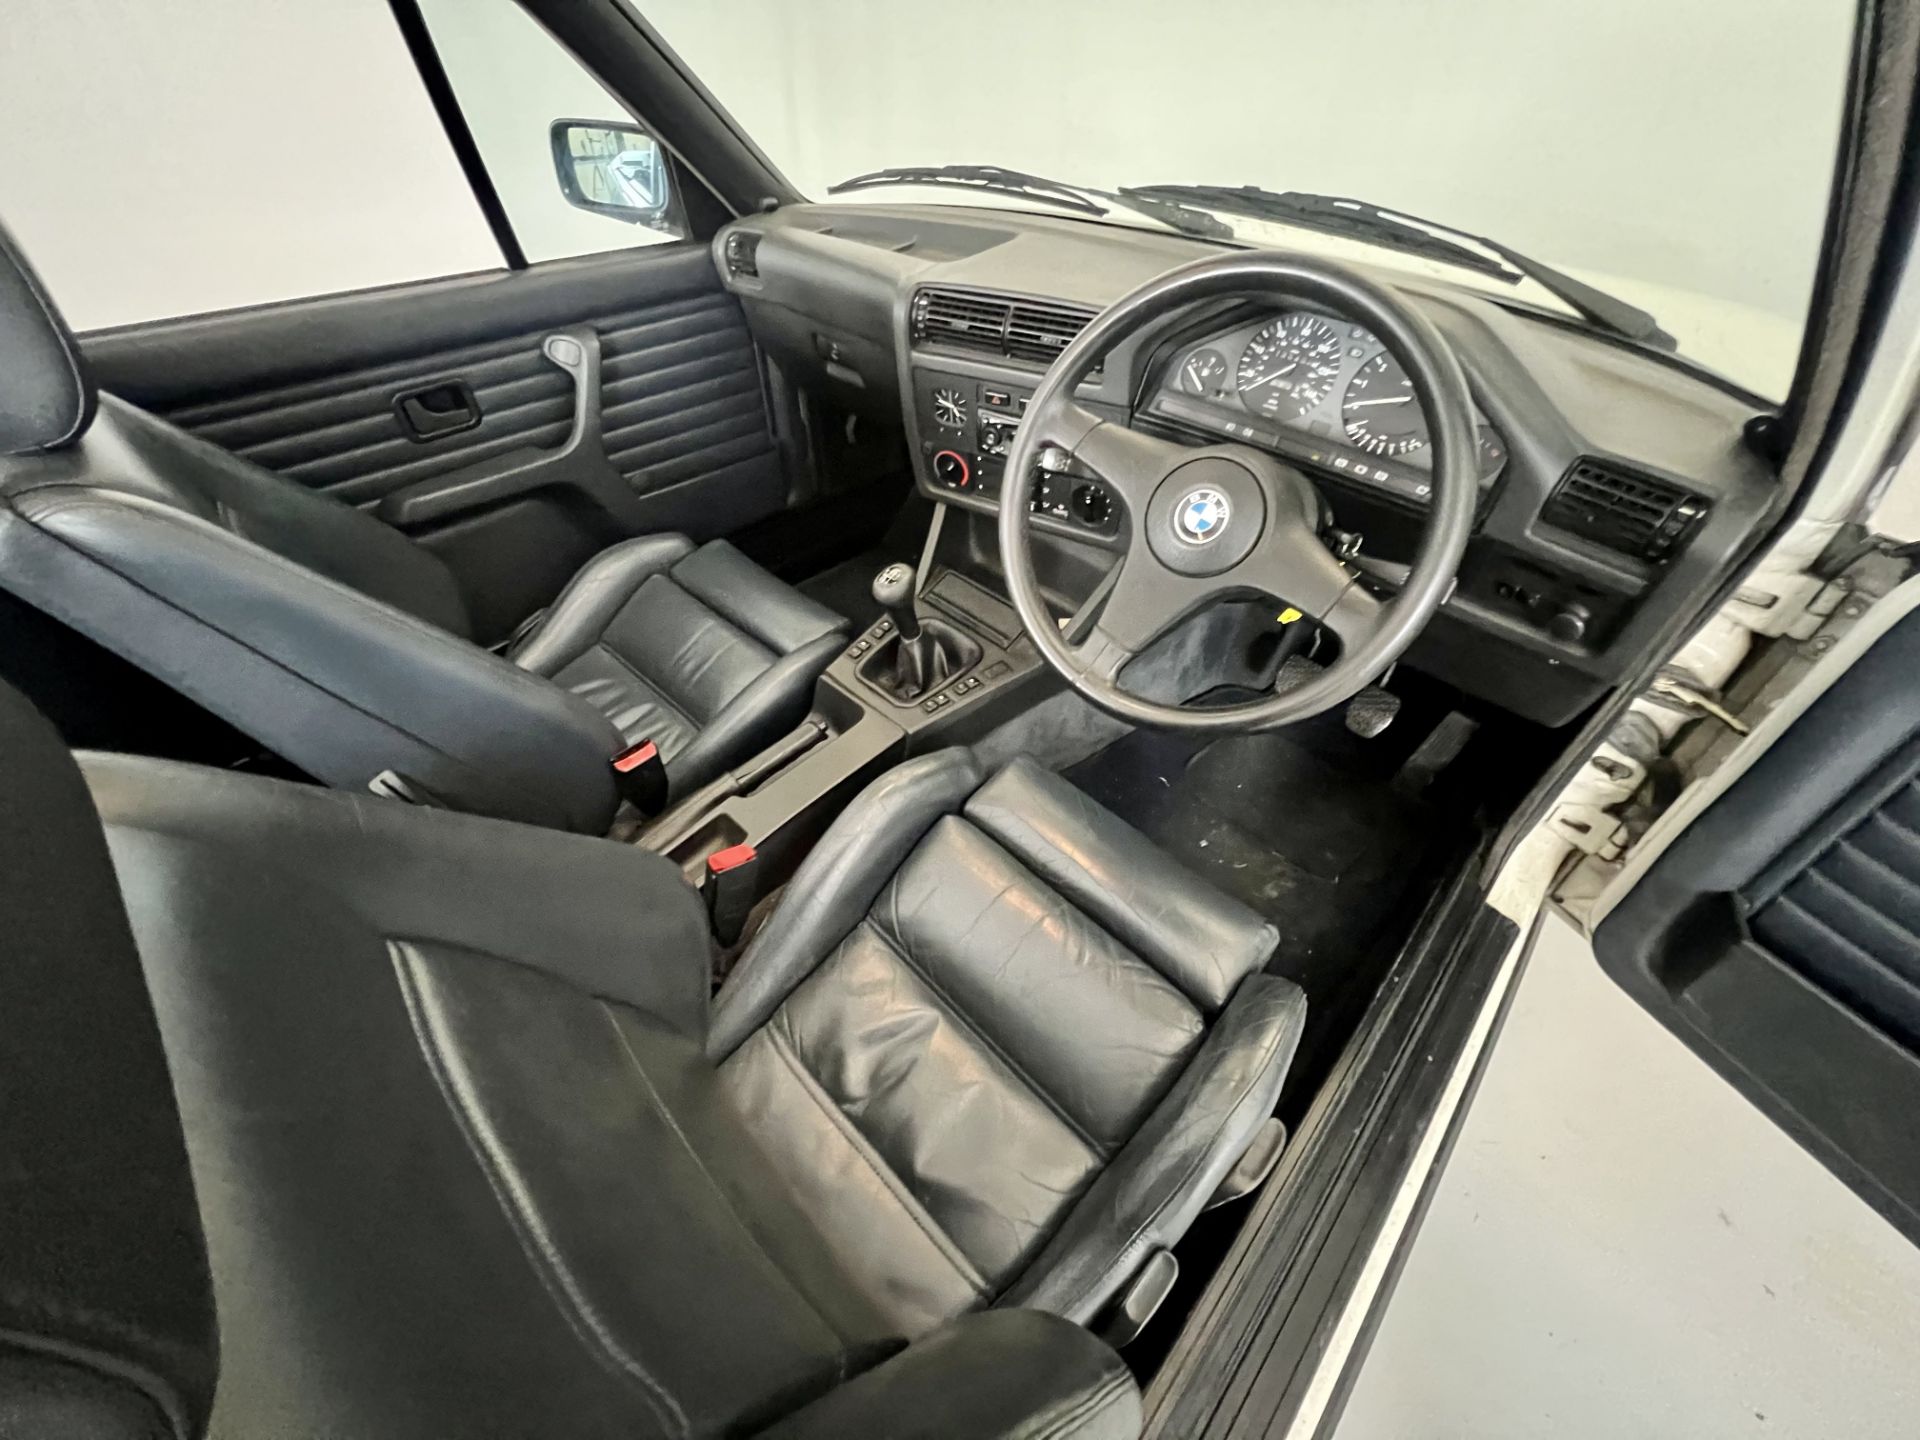 BMW 325i Cabriolet - Image 20 of 32